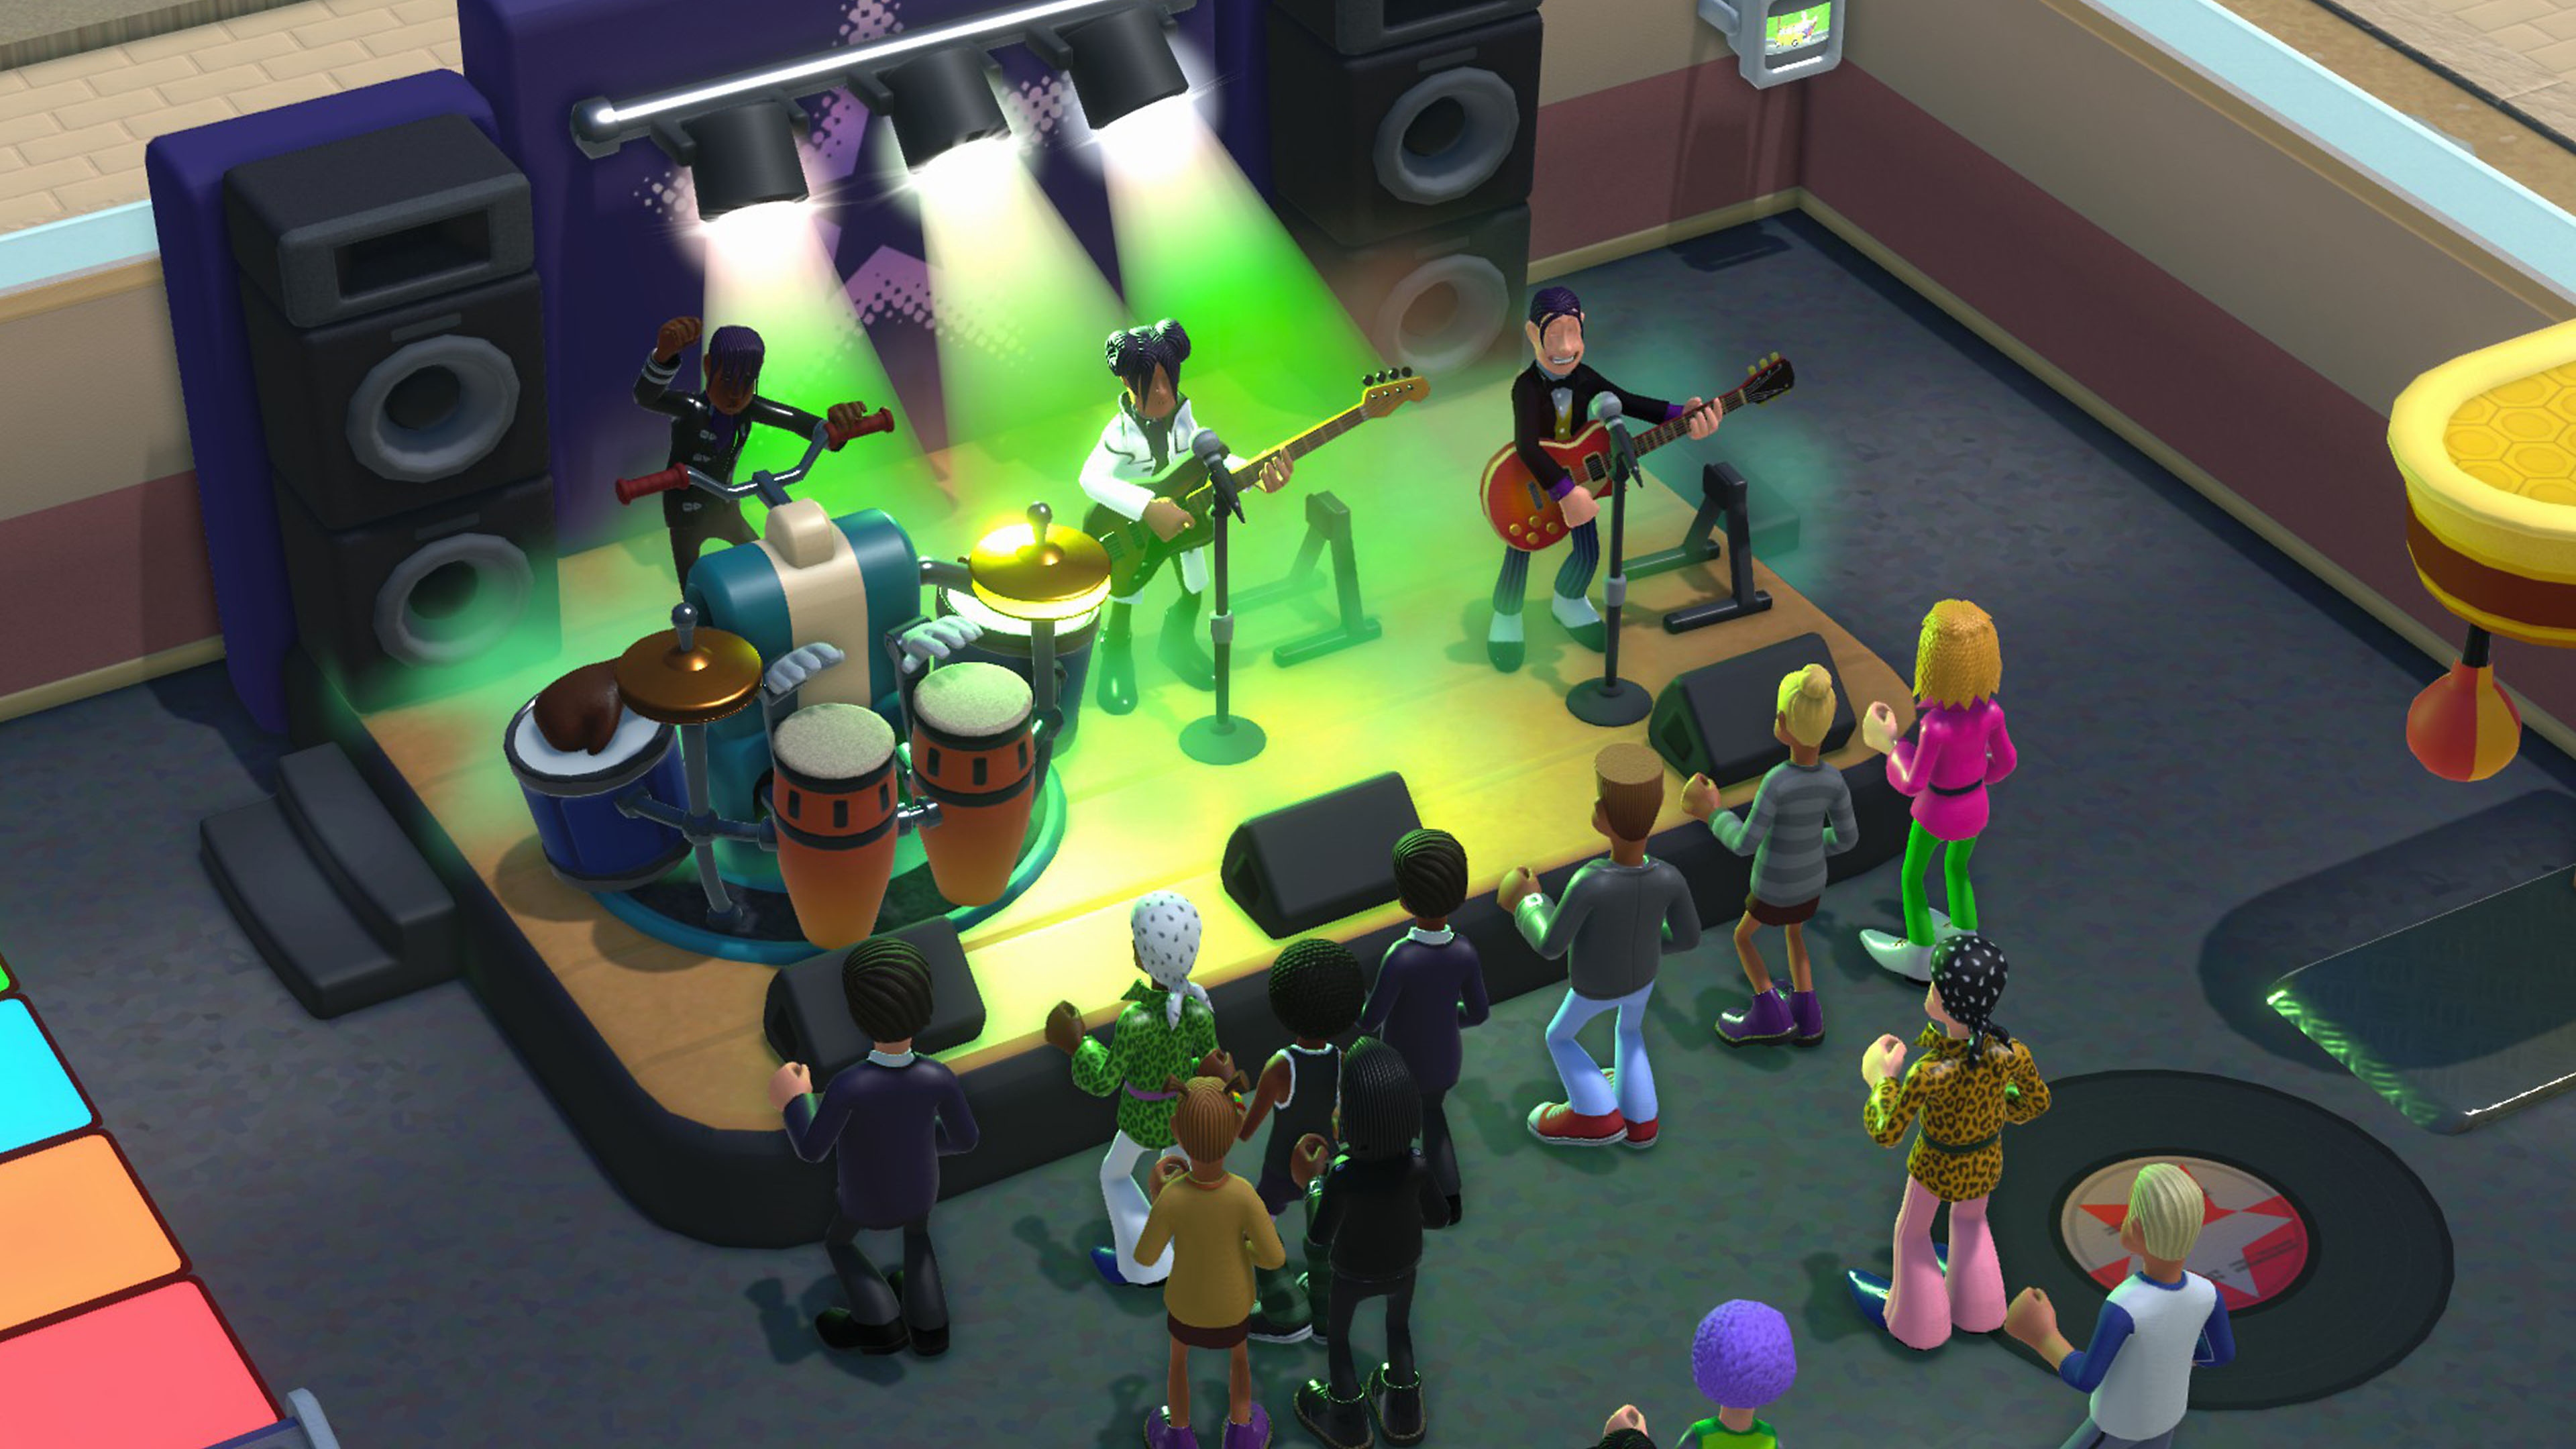 Une capture d'écran de Two Point Campus montrant un band jouant sur scène